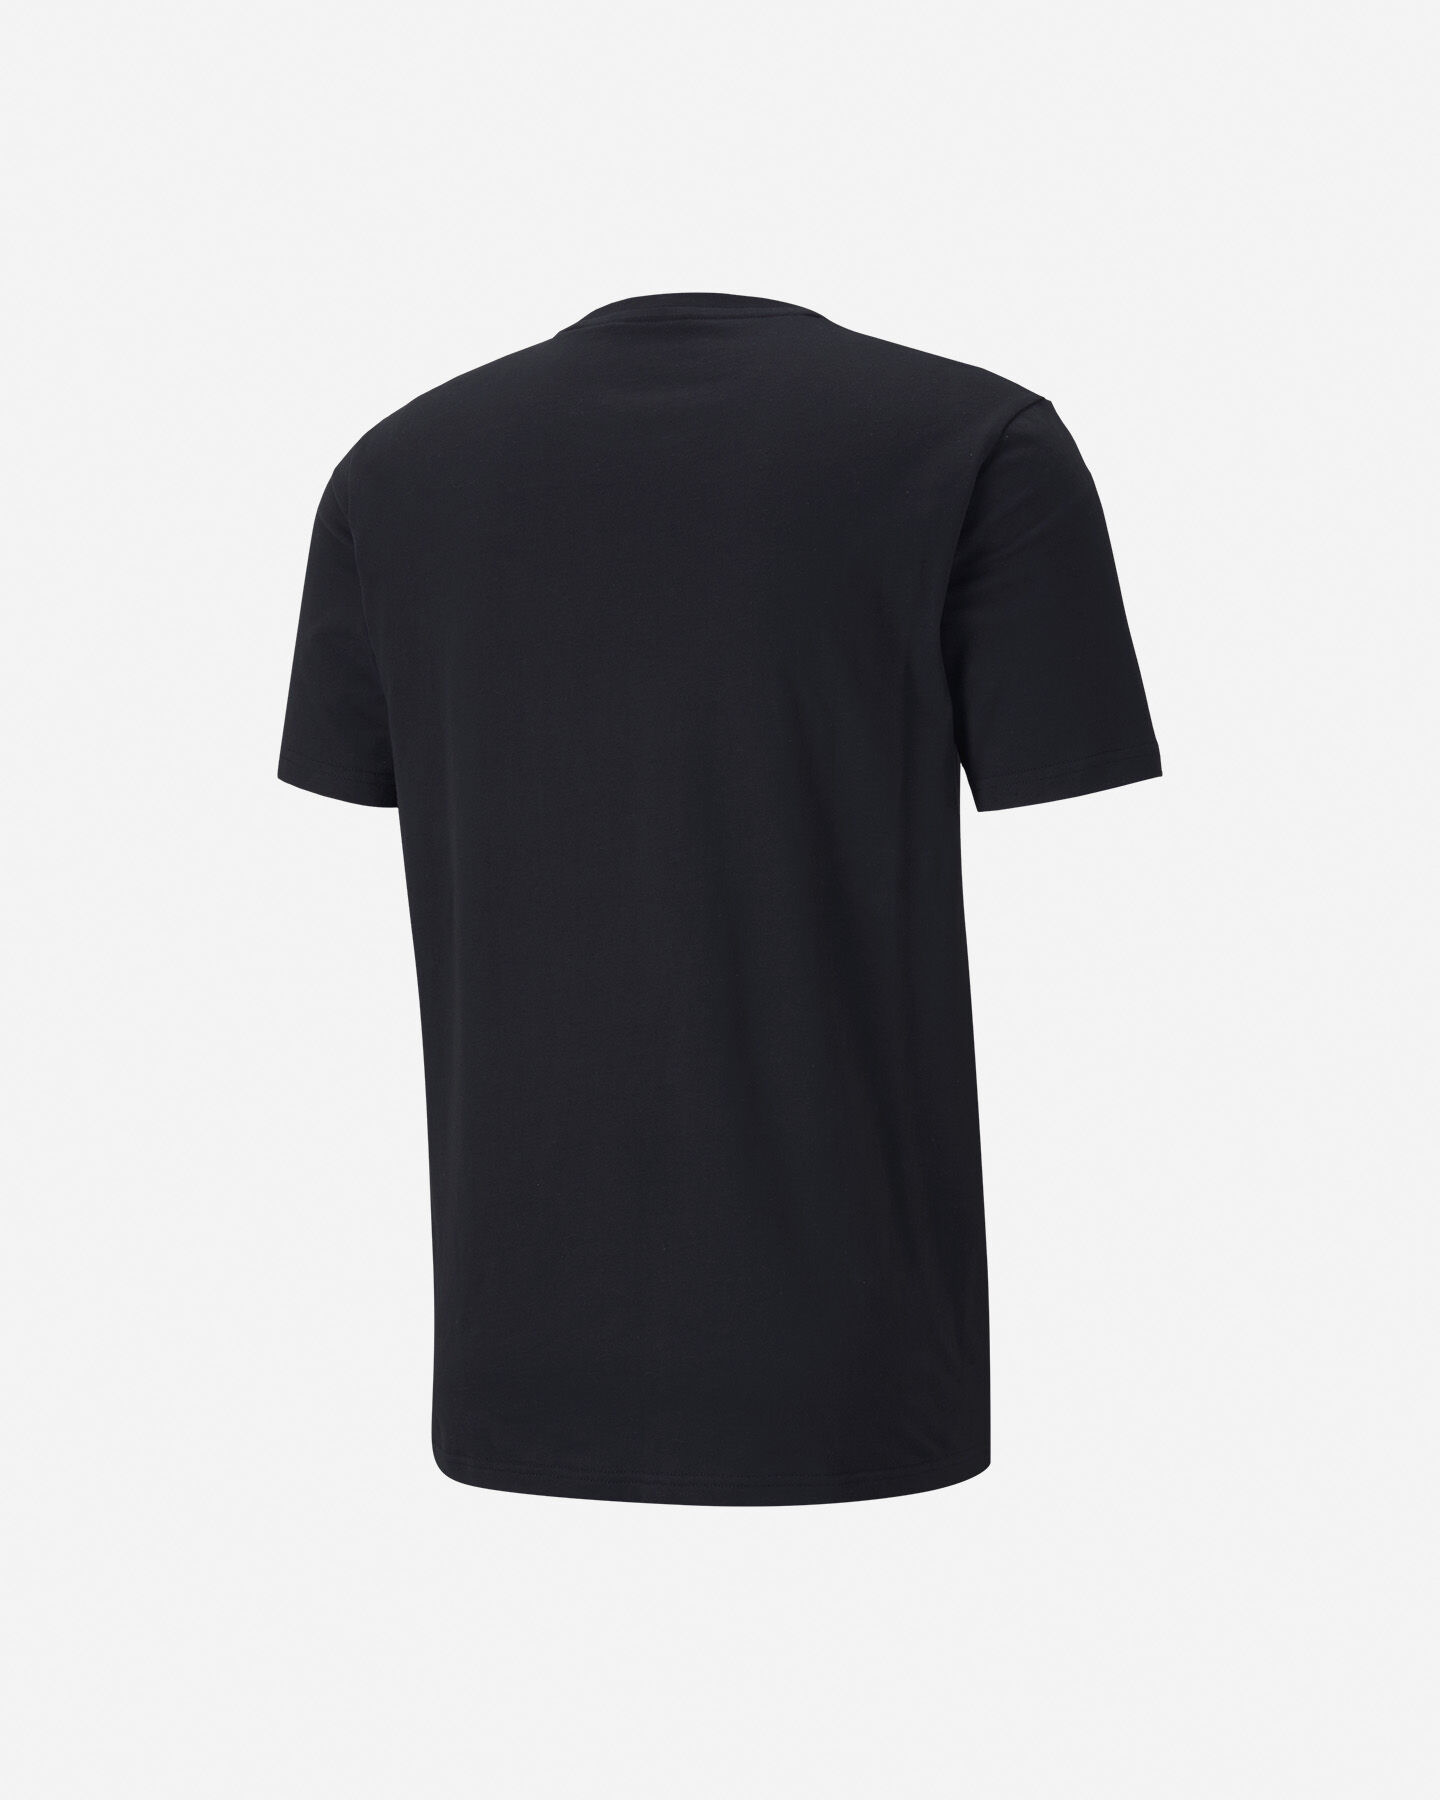  T-Shirt PUMA ATHTLETIC M S5235064|01|M scatto 1